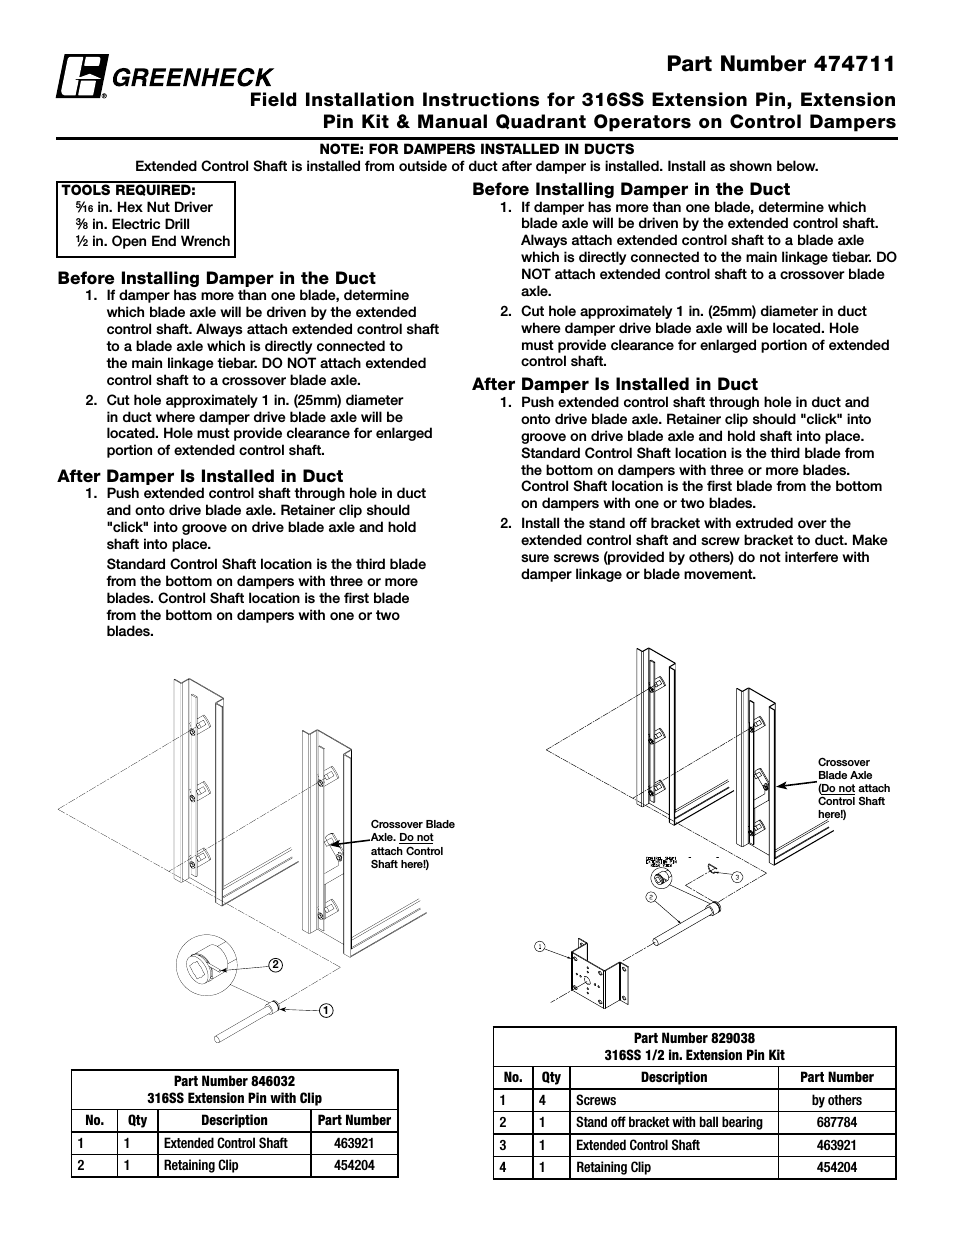 316SS Extension Pin Kit & Manual Quadrant Kit (474711)